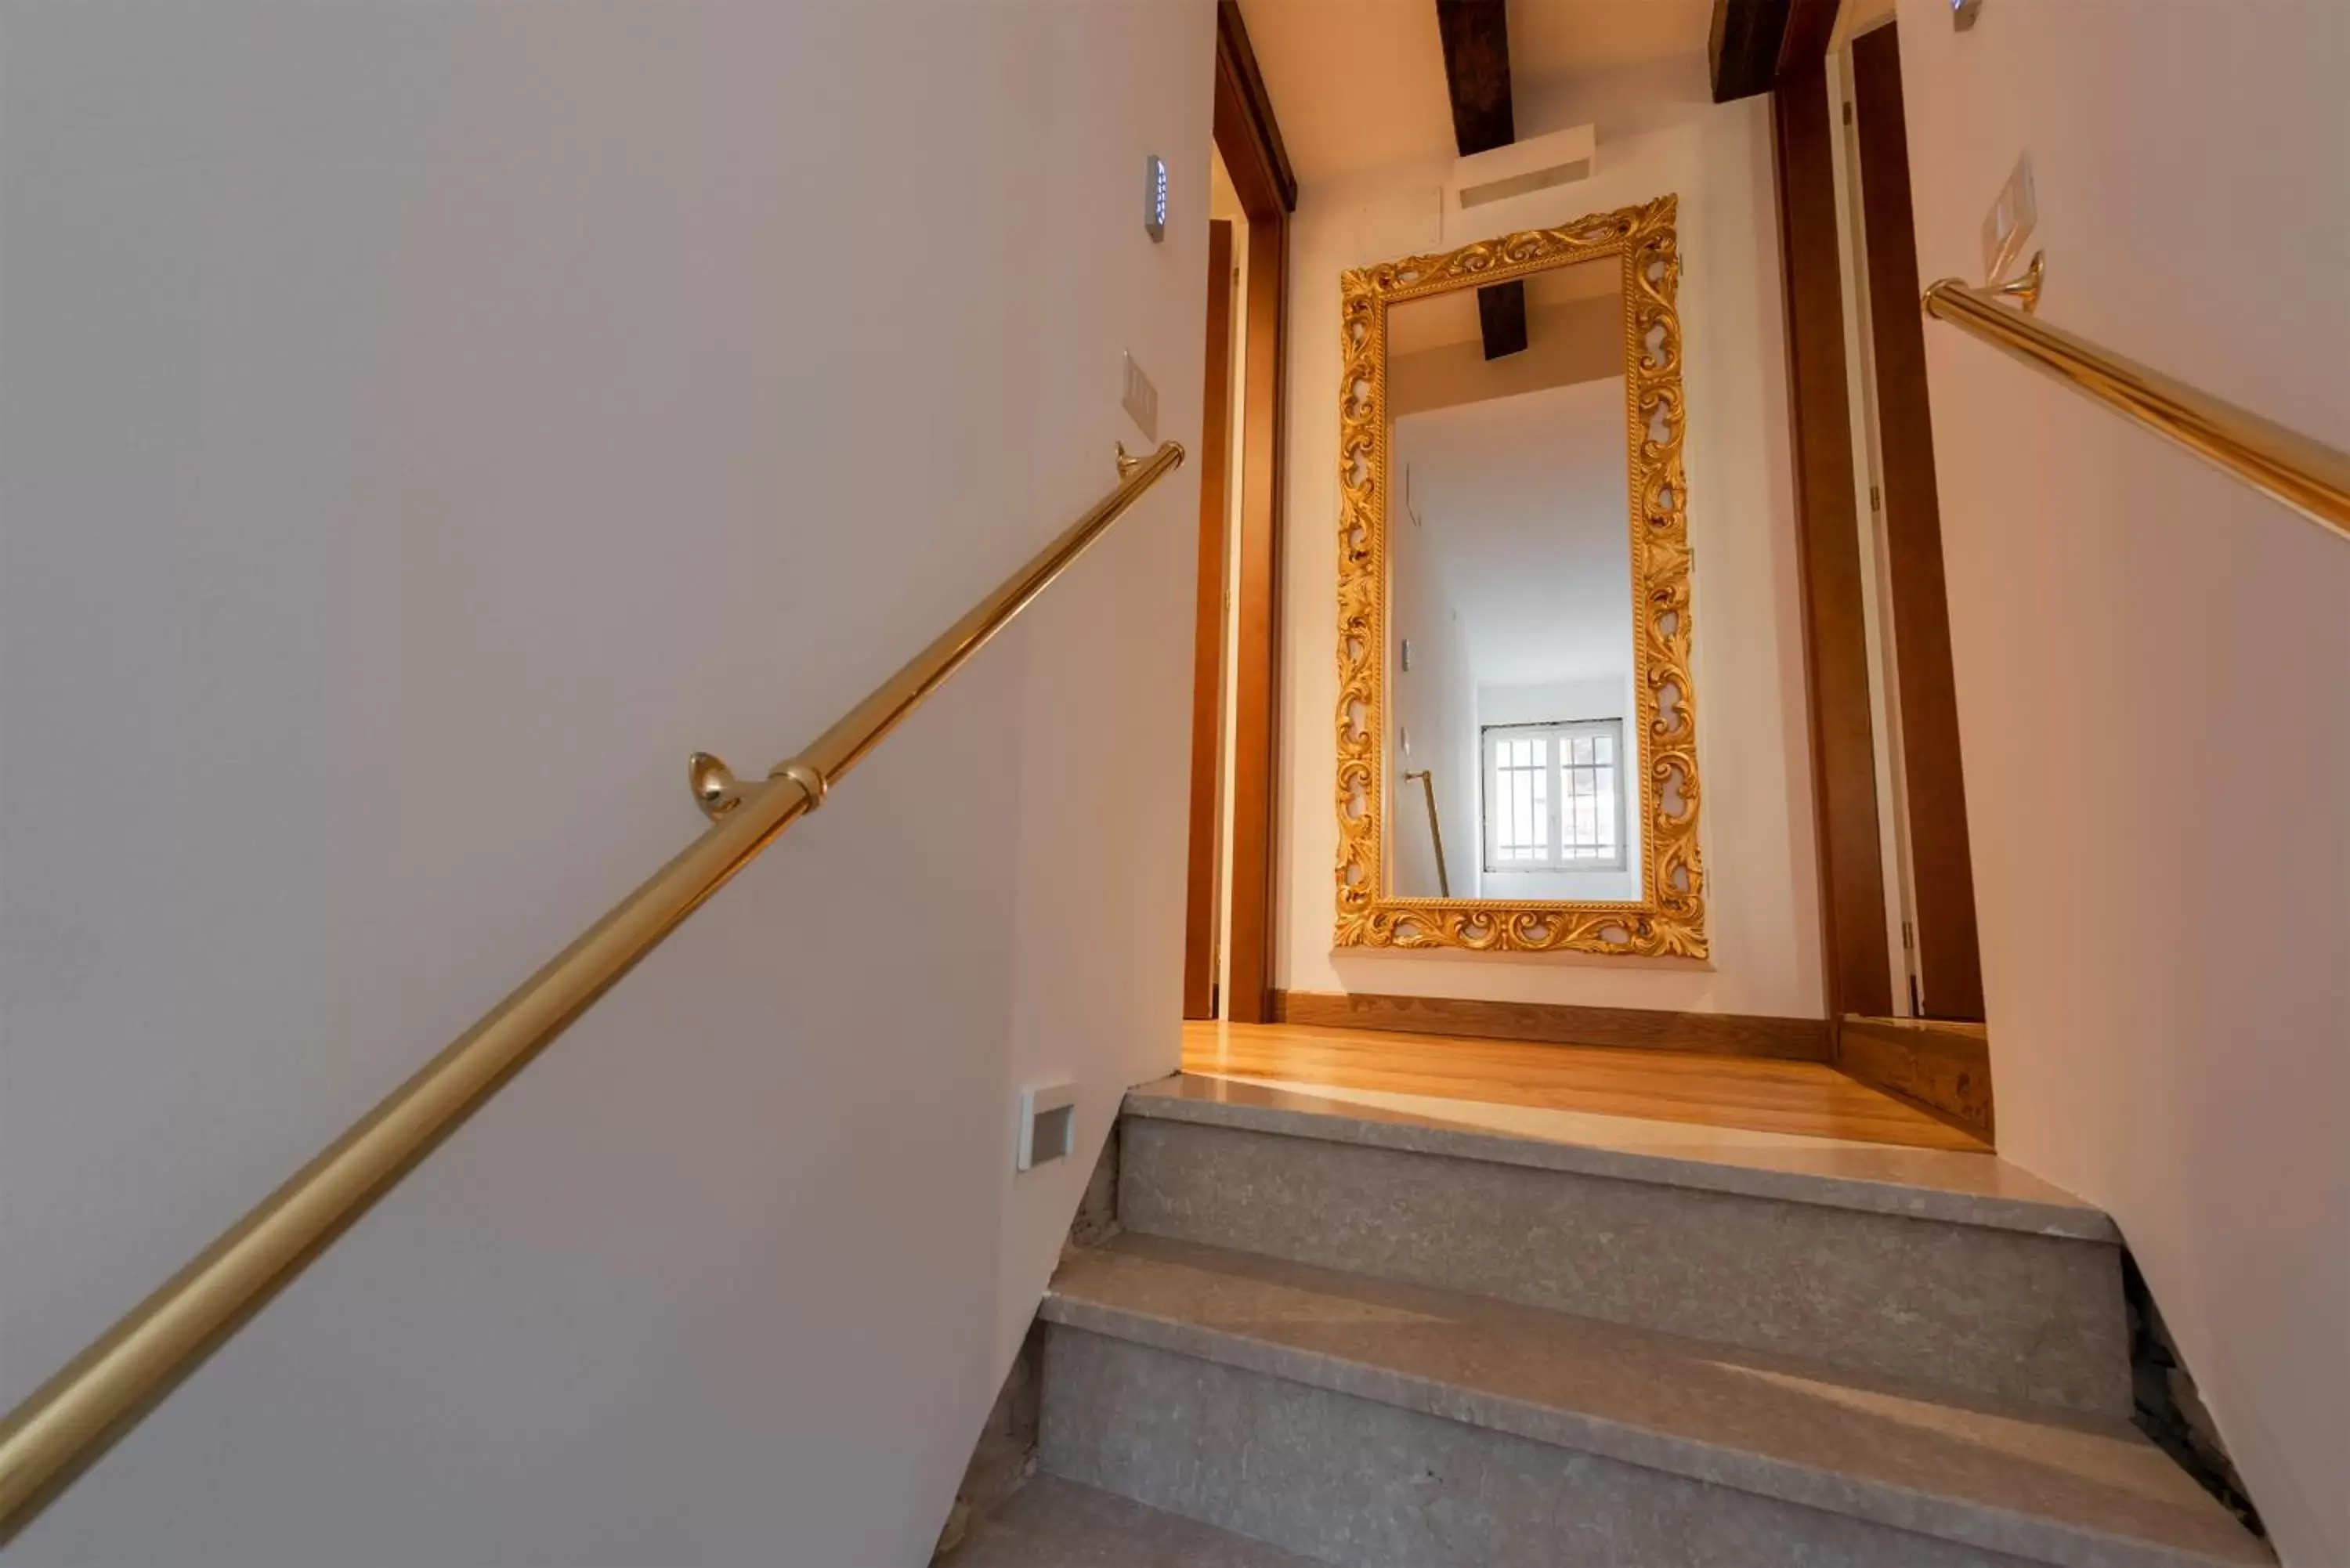 Area and facilities in Hotel Giorgione